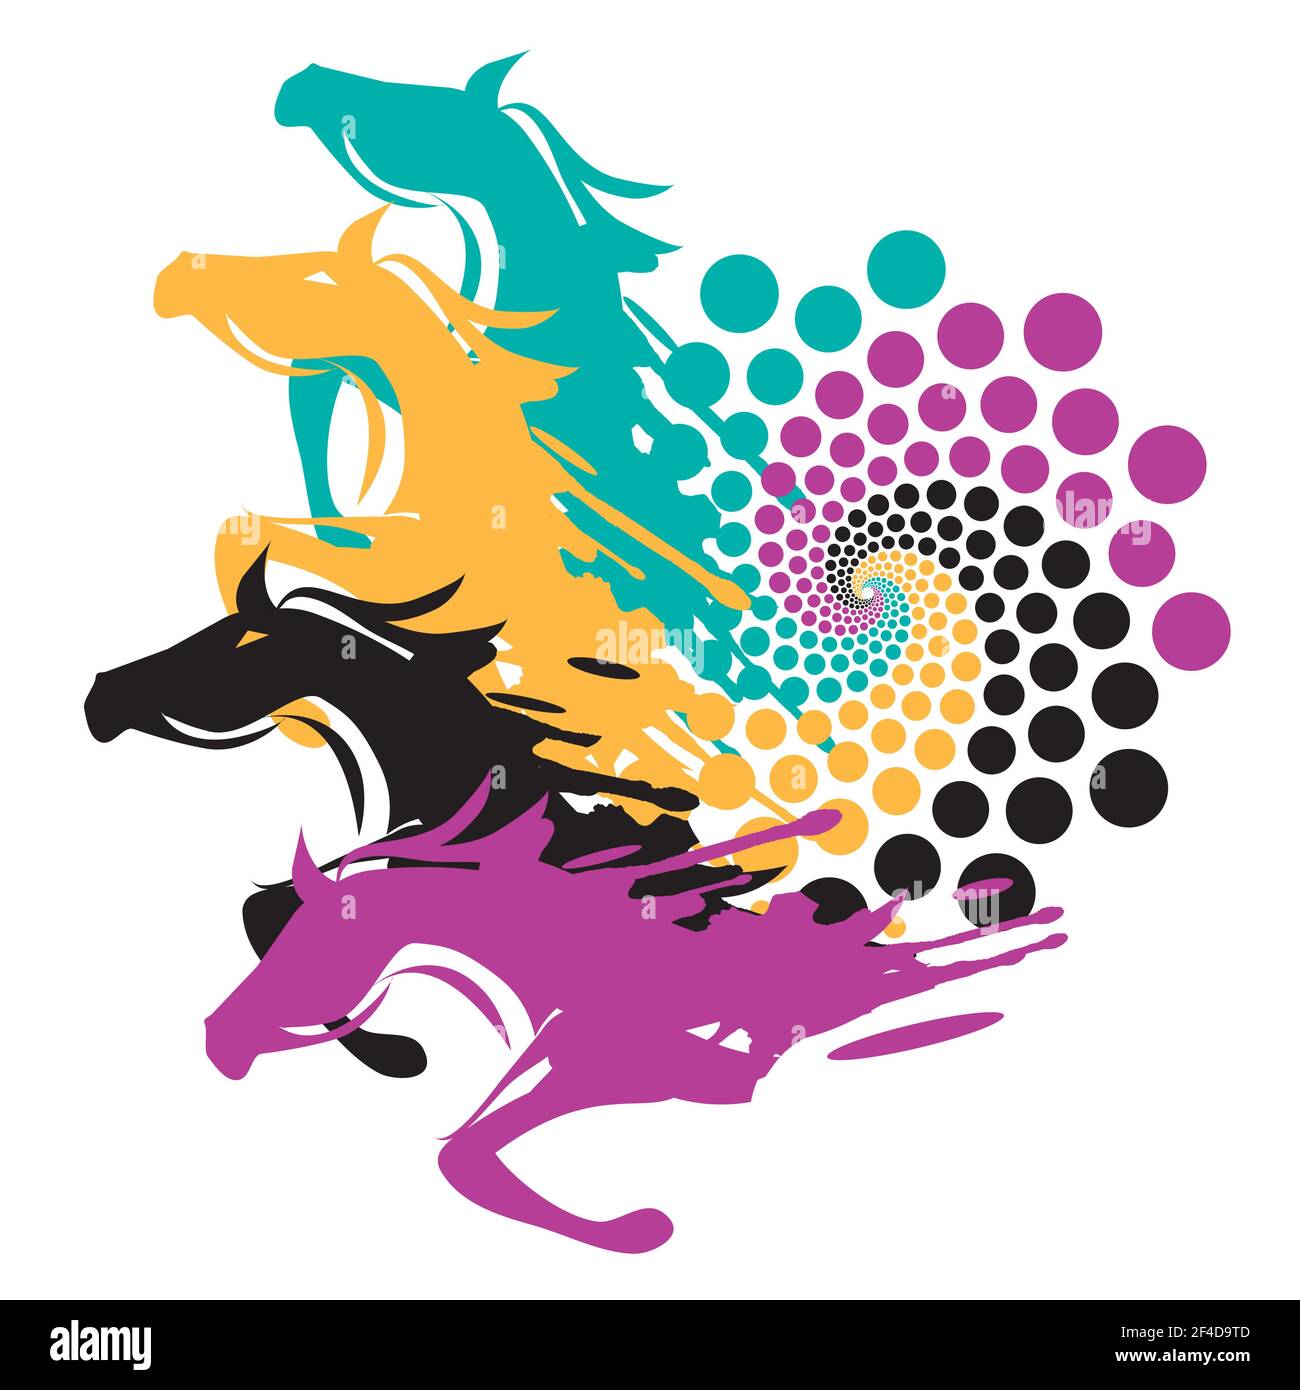 Quatre chevaux sauvages avec spirale colorée. Illustration expressive de chevaux en train de courir à partir de la spirale. Vecteur disponible Illustration de Vecteur